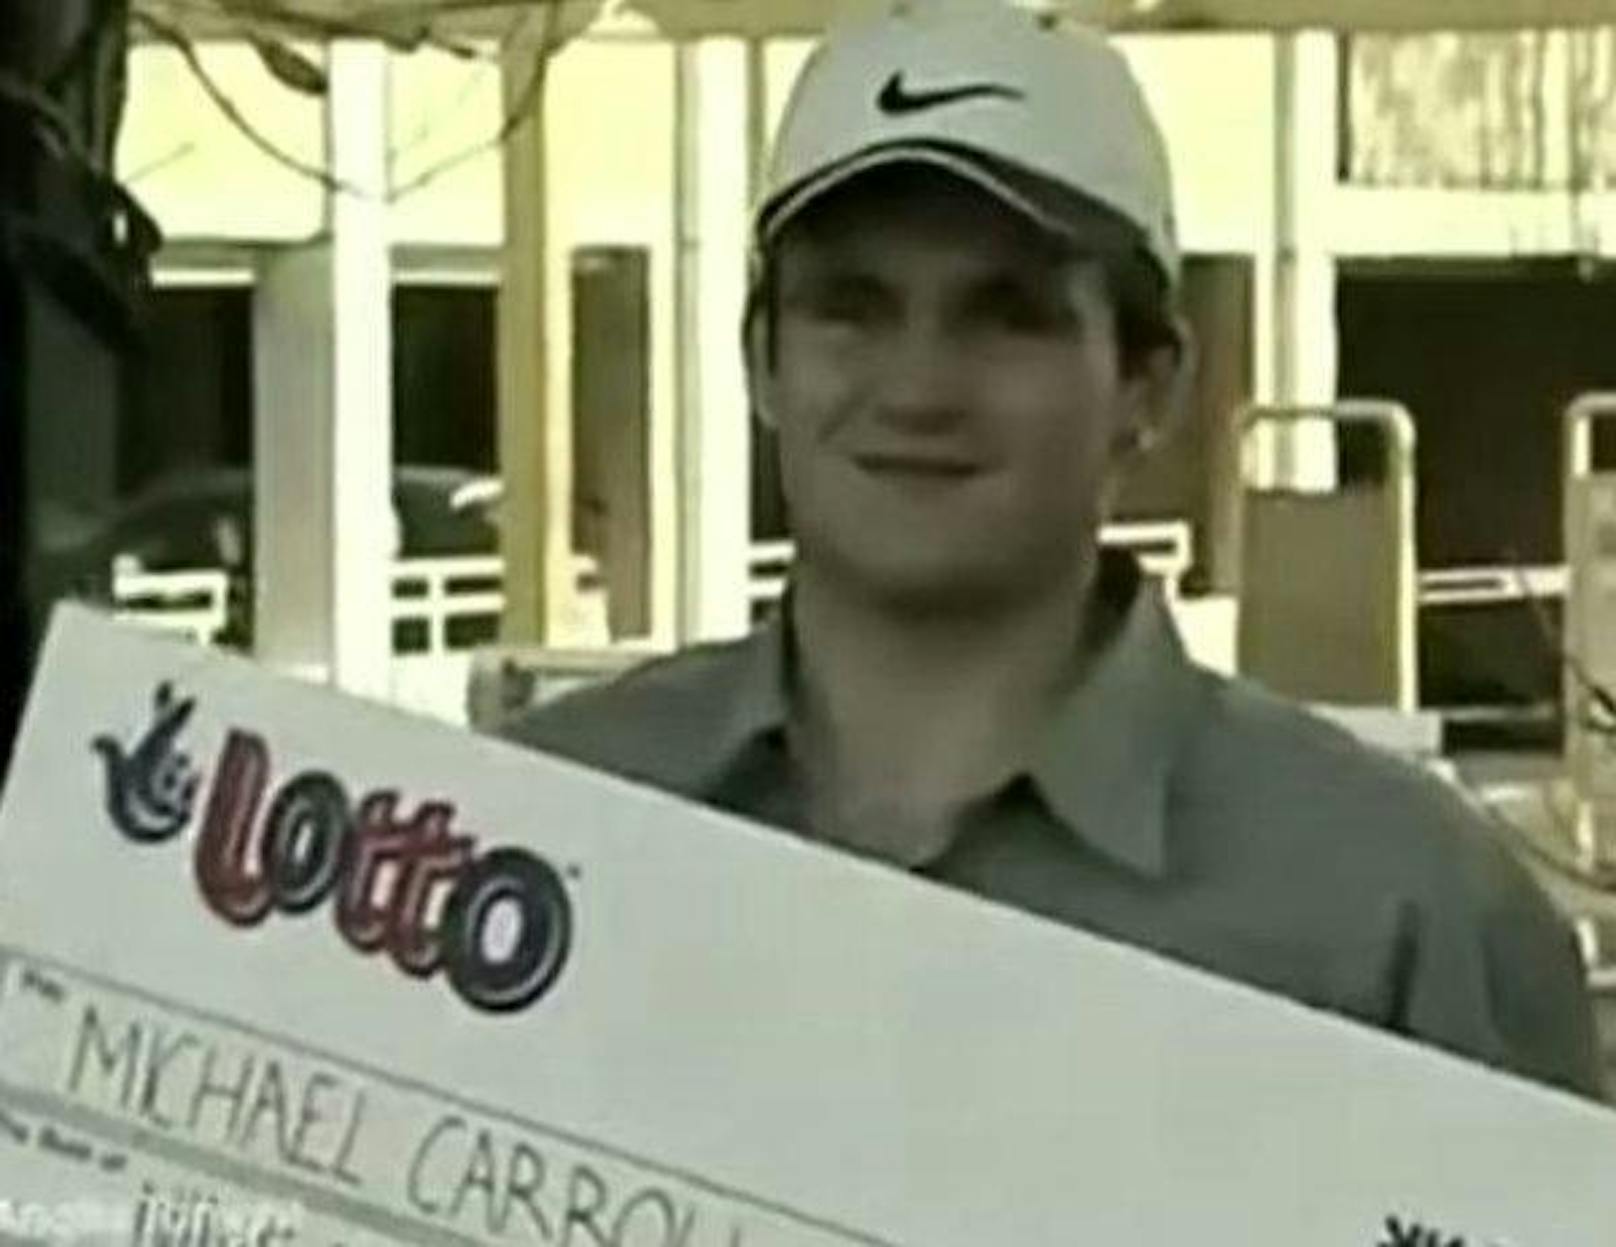 Fast 11 Millionen Euro hat Michael Carroll in der britischen Lotterie gewonnen. Heute arbeitet er wieder als Müllmann. Wie konnte das passieren? Seinen Gewinn aus dem Jahr 2002 gab er für Drogen, Partys, Nutten und schnelle Autos aus. Fünf Jahre später war schon nichts mehr übrig.